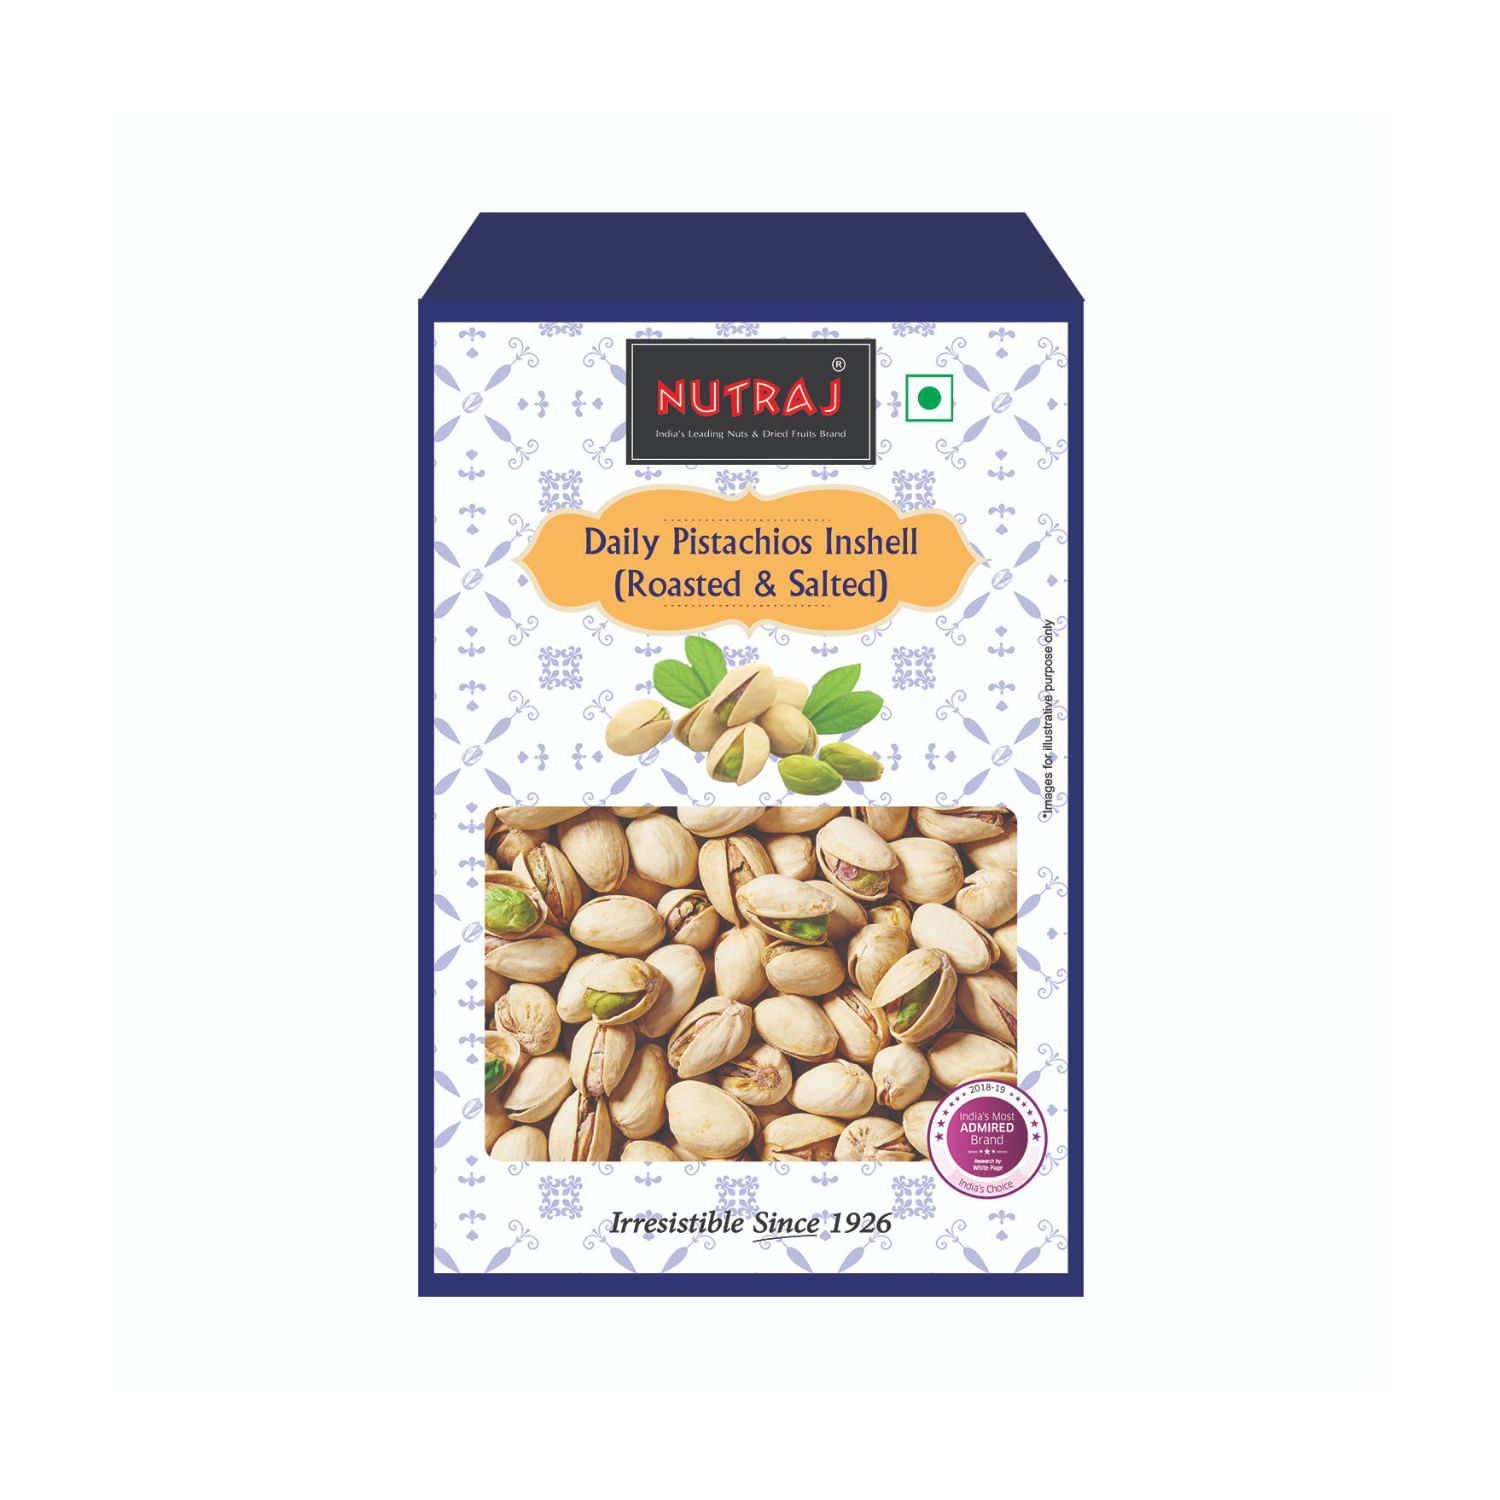 Nutraj Daily Mixed Dry Fruits Combo Pack (Almonds, Cashews, Raisins, Pistachios) - 2Kg (500g Each)